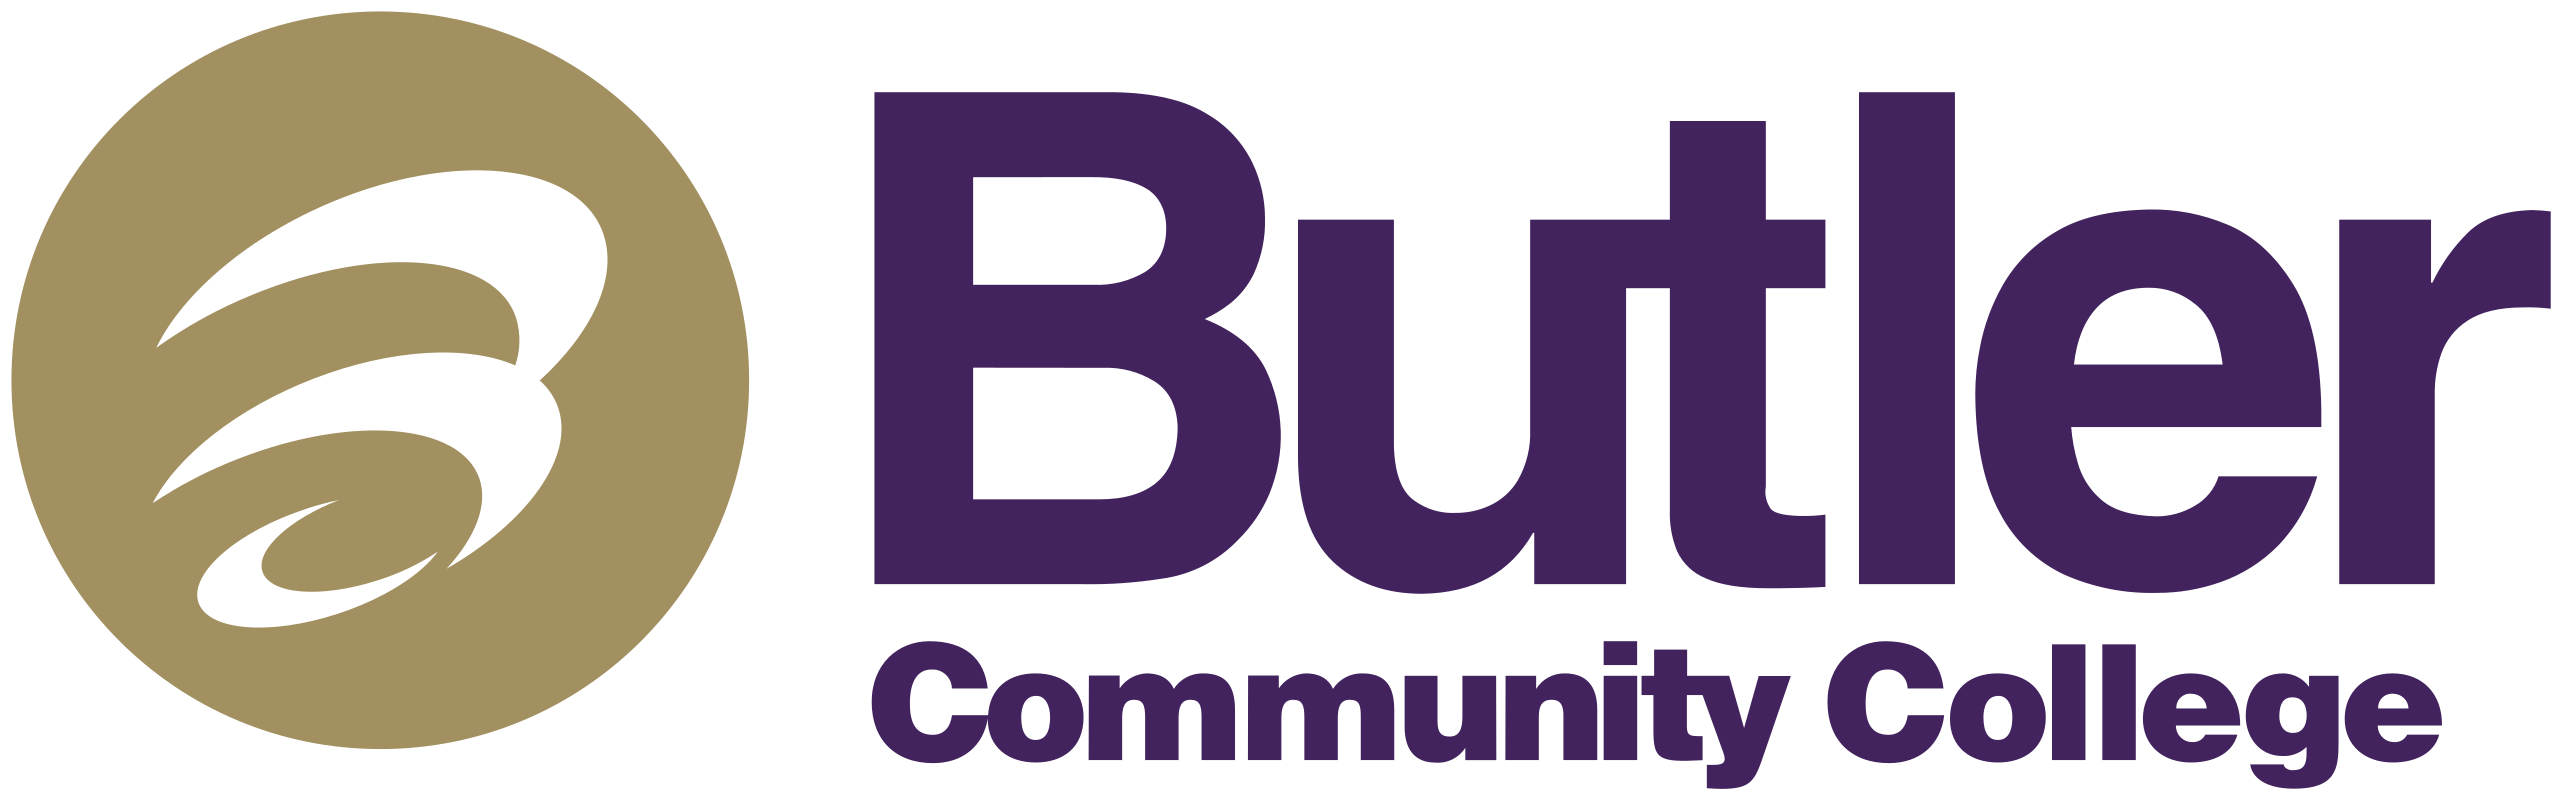 Butler_Community_College_logo.svg